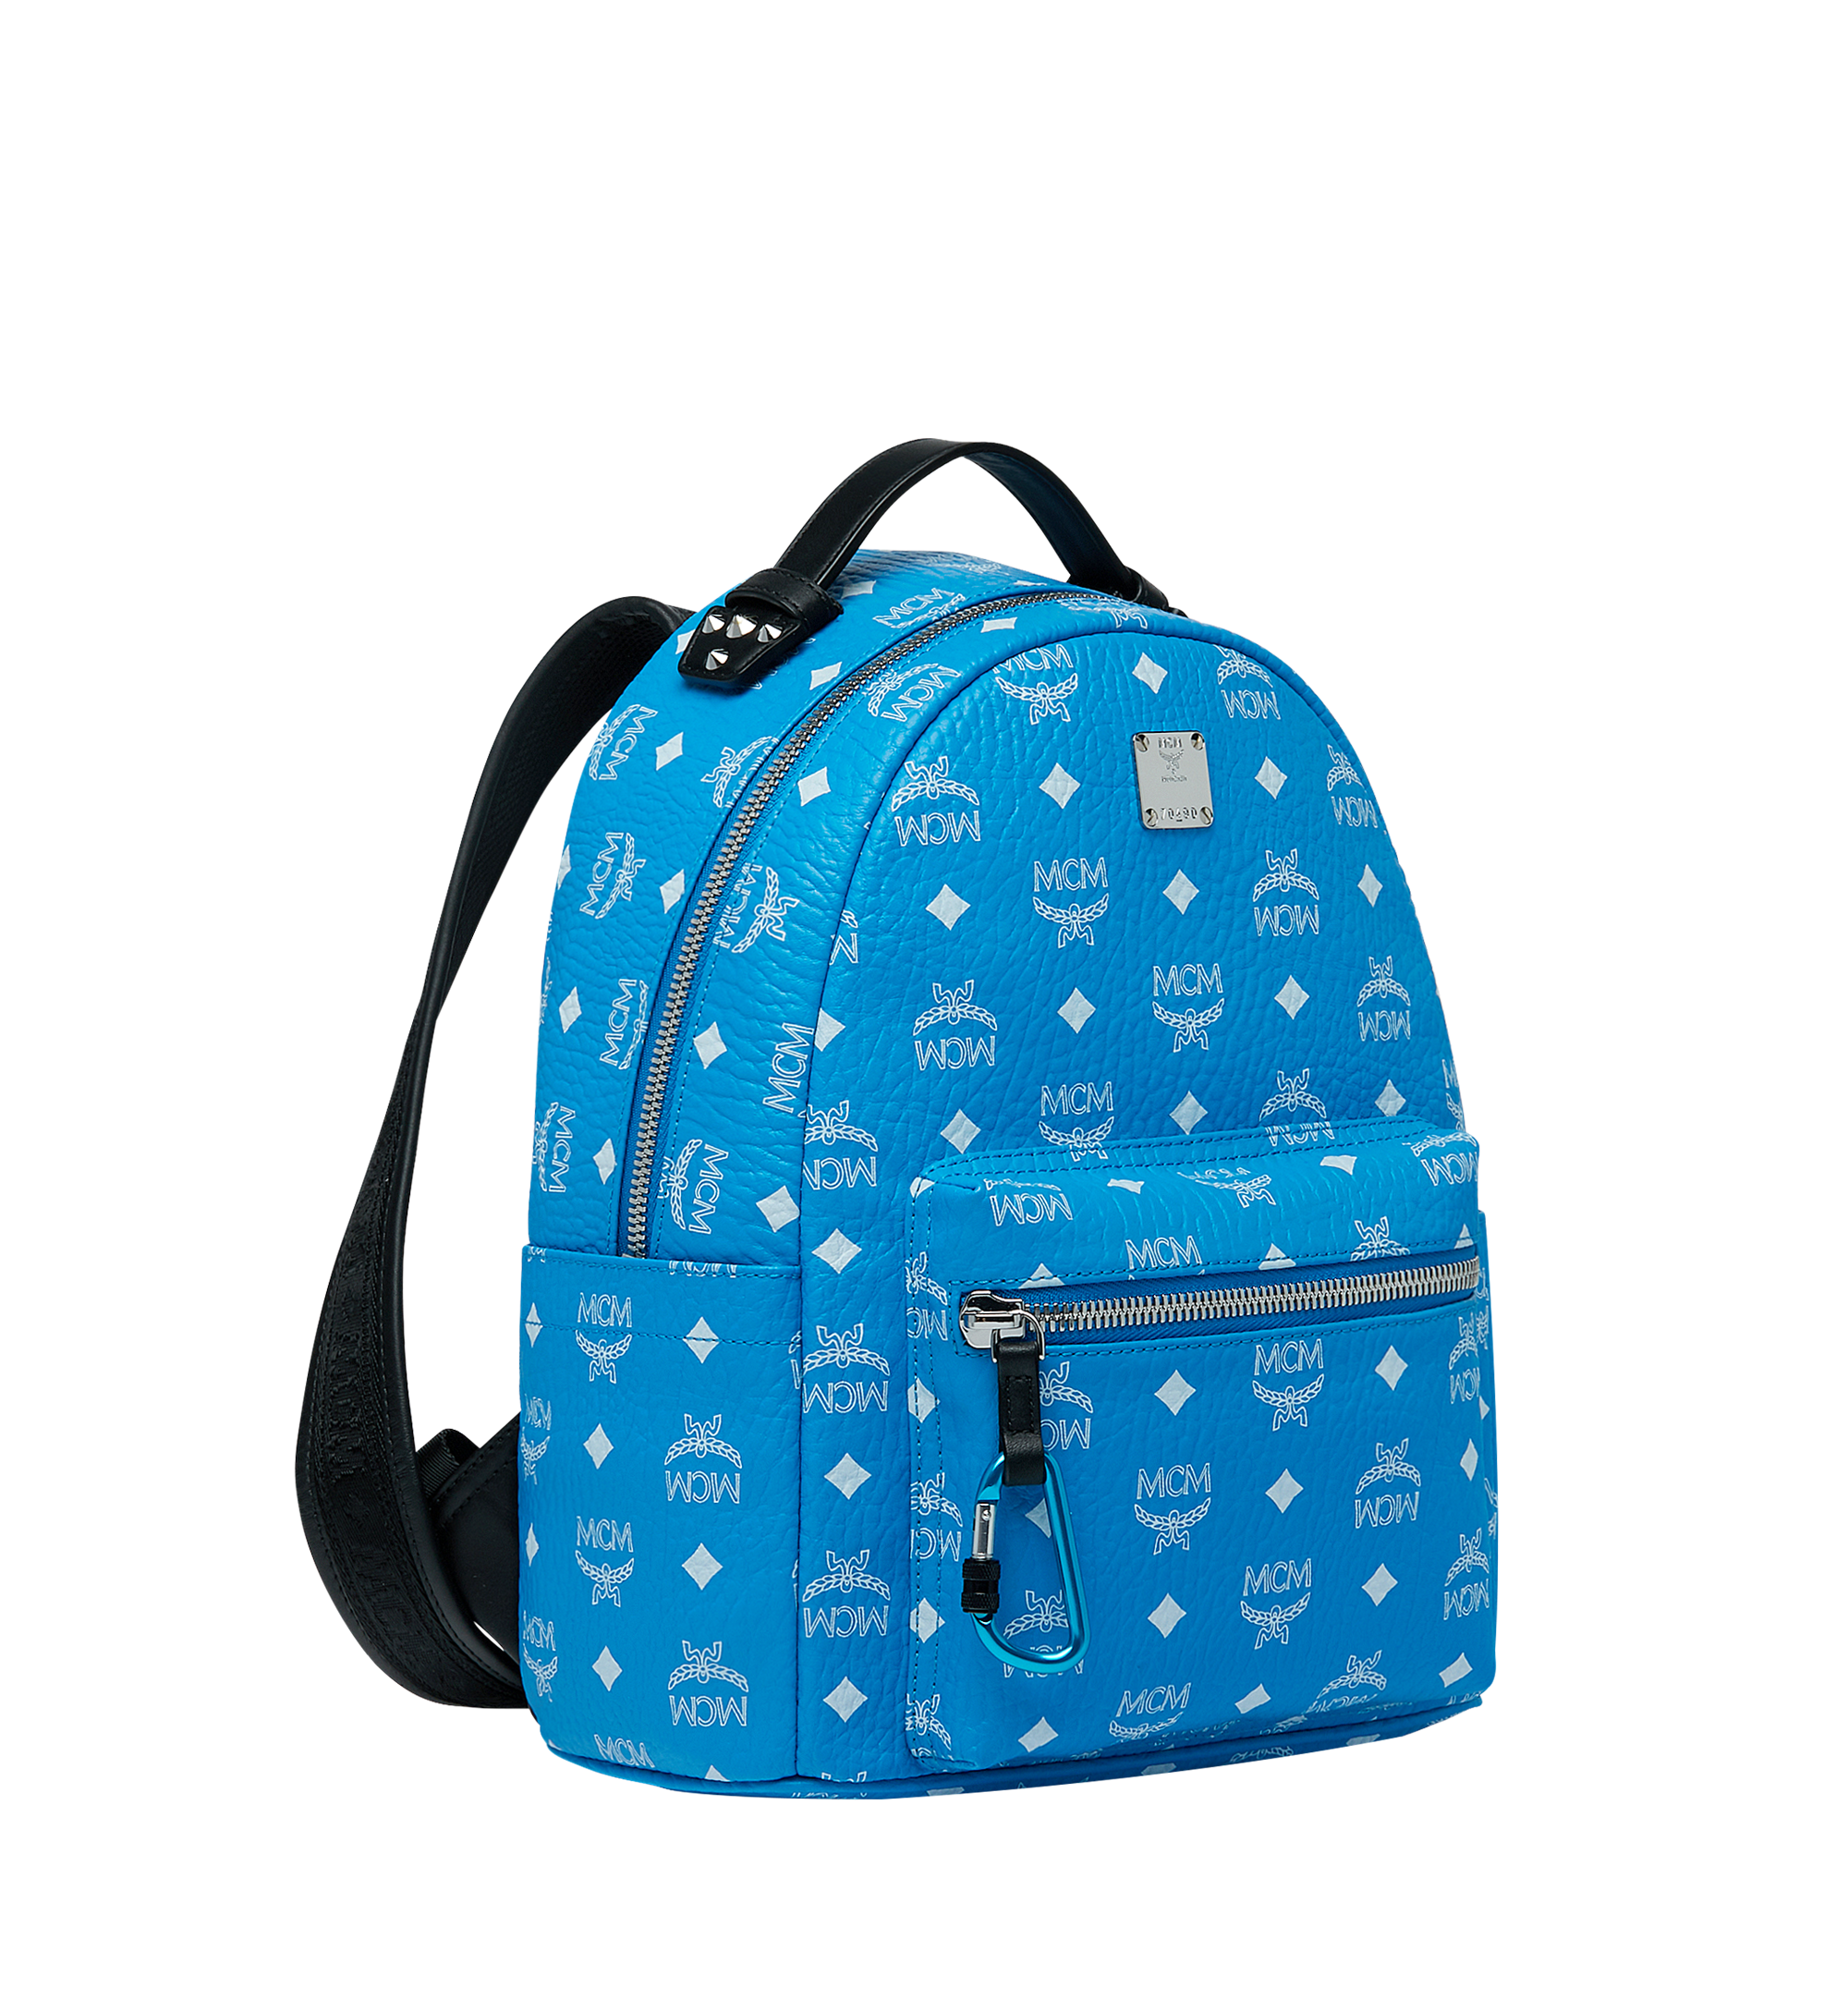 Large Stark Backpack in Visetos Blue